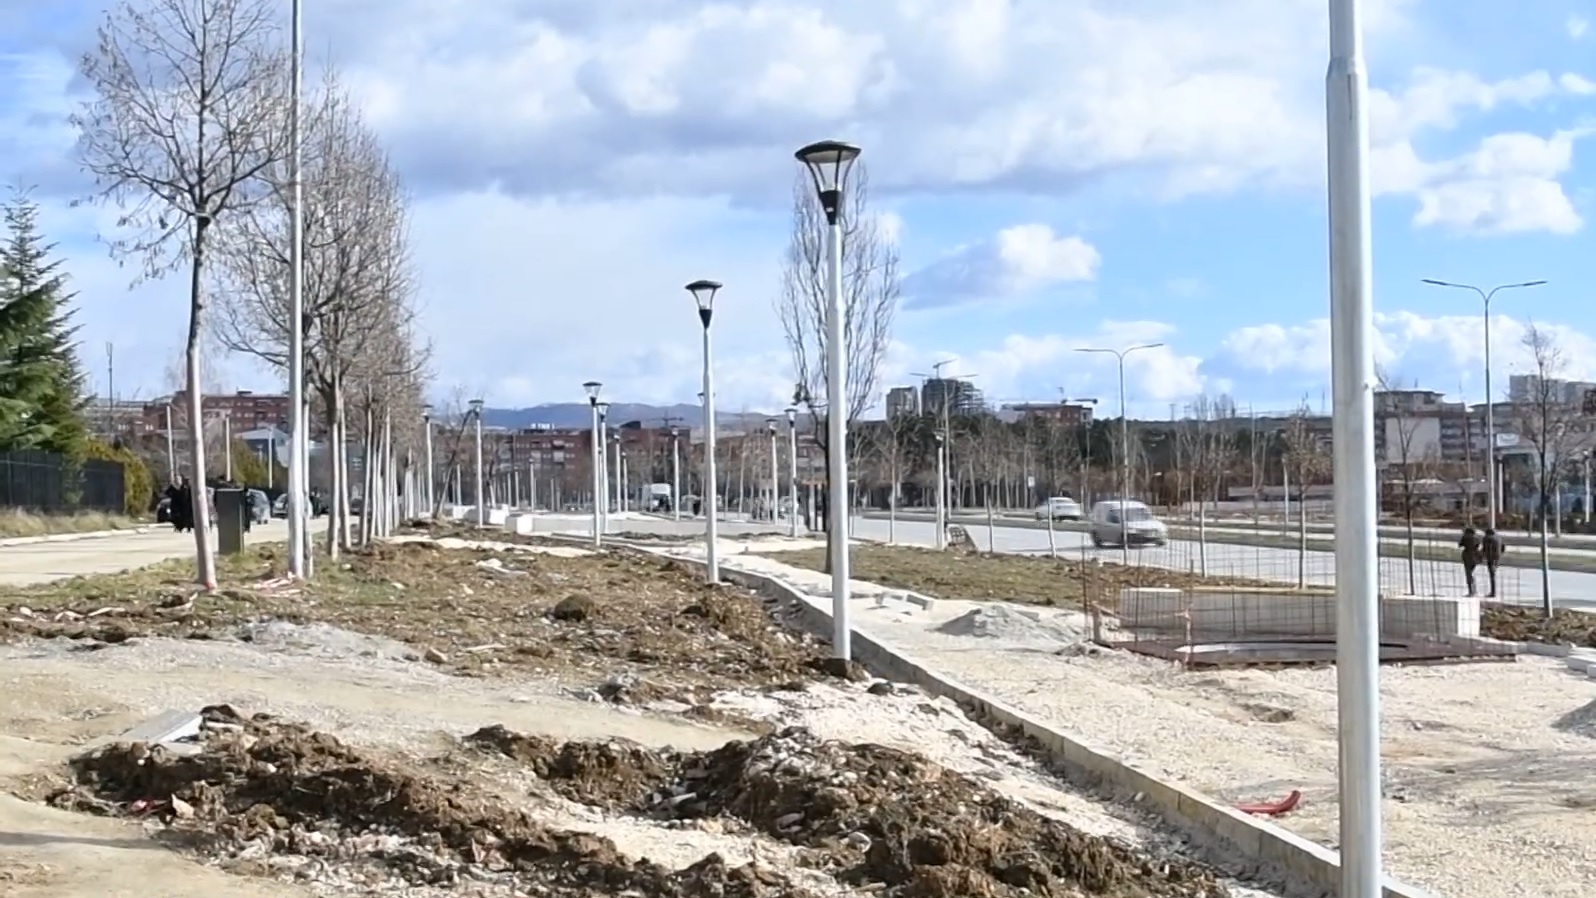 Moti i papërshtatshëm e lë Lagjen e Spitalit pa parkun linear (VIDEO)